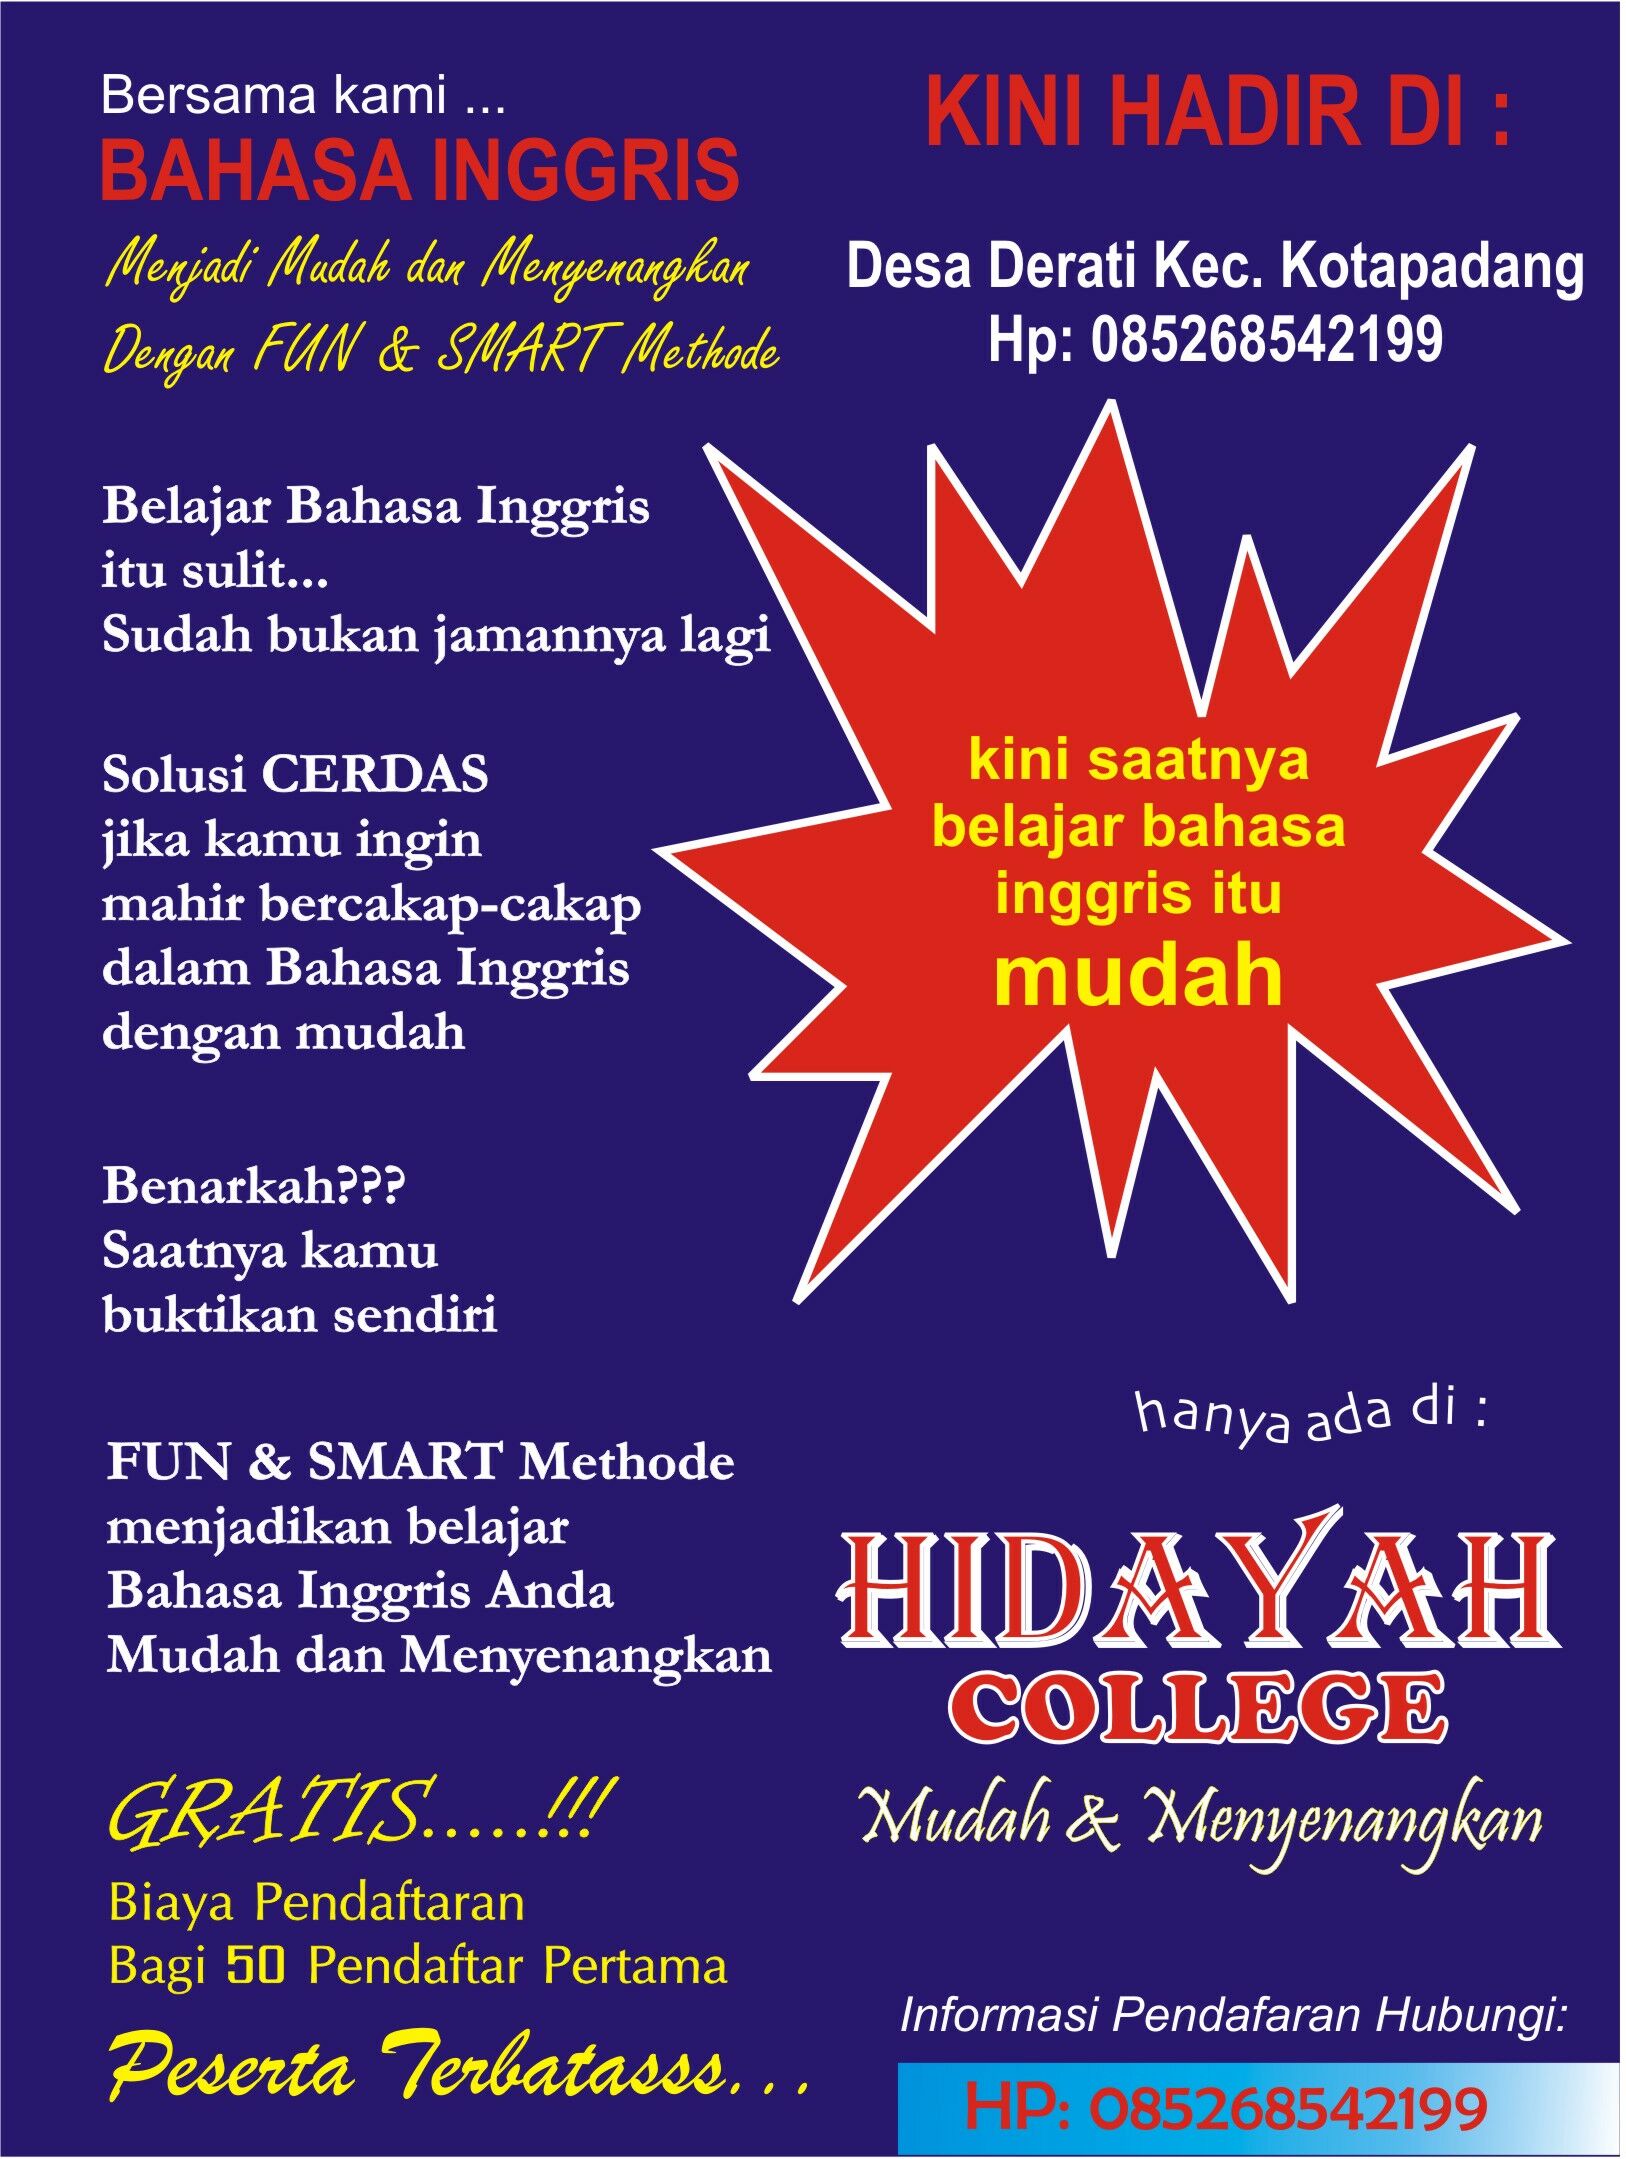 Pusat Kursus Bahasa Inggris HIDAYAH COLLEGE  hidayahcollege